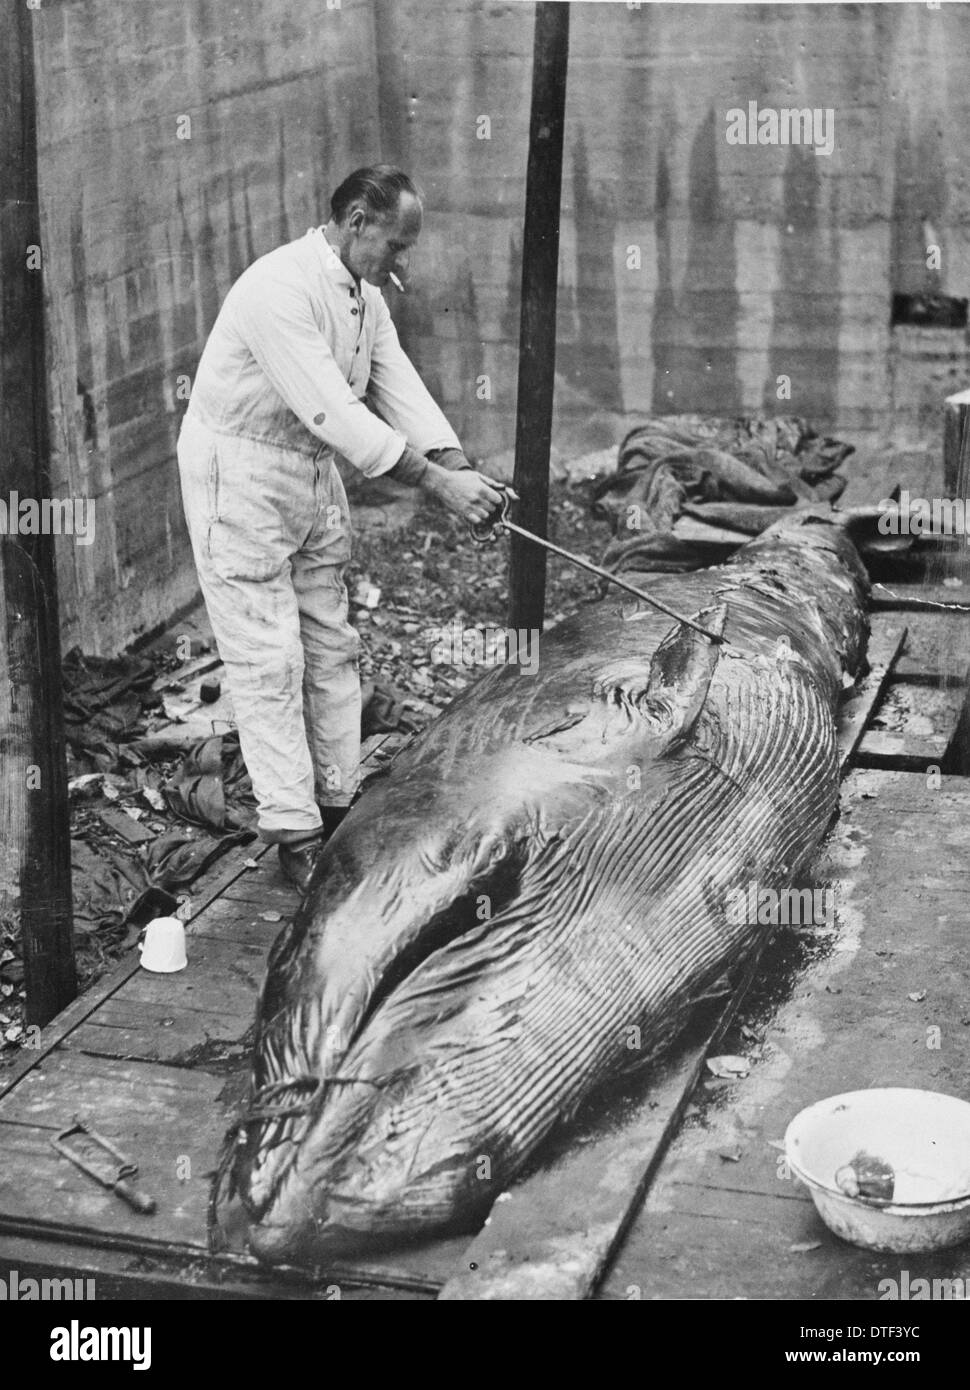 Travaillant sur la carcasse de baleine, 1930 Banque D'Images